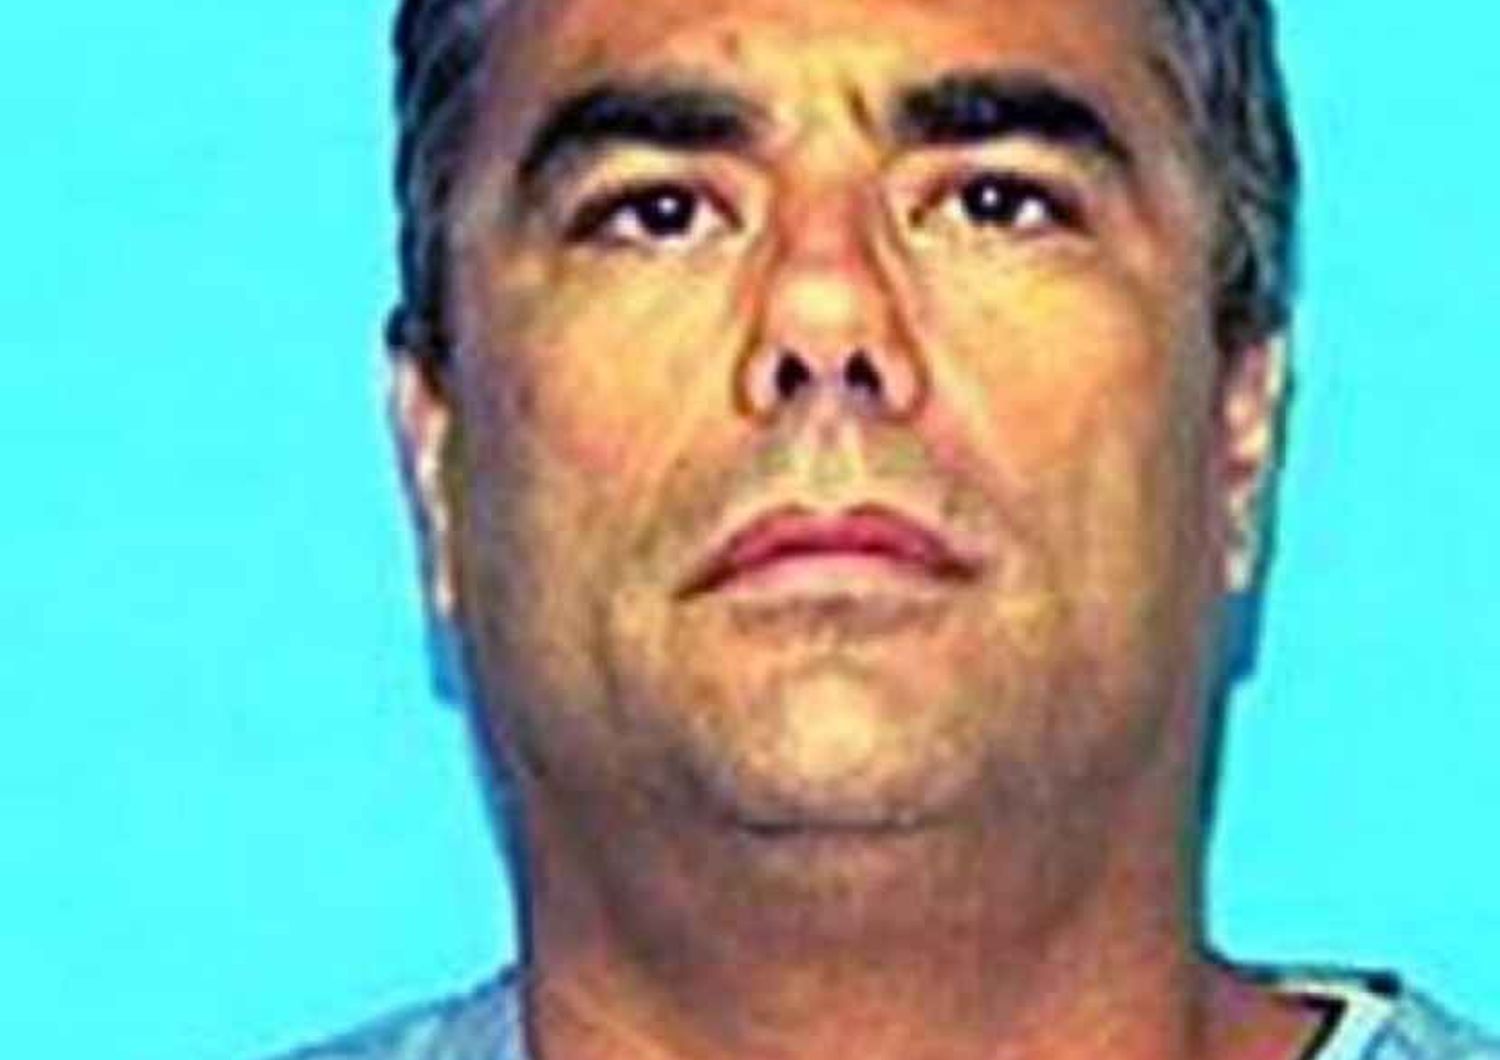 Dramma della follia in Florida: uccide la figlia e sei nipotini e si spara - Video